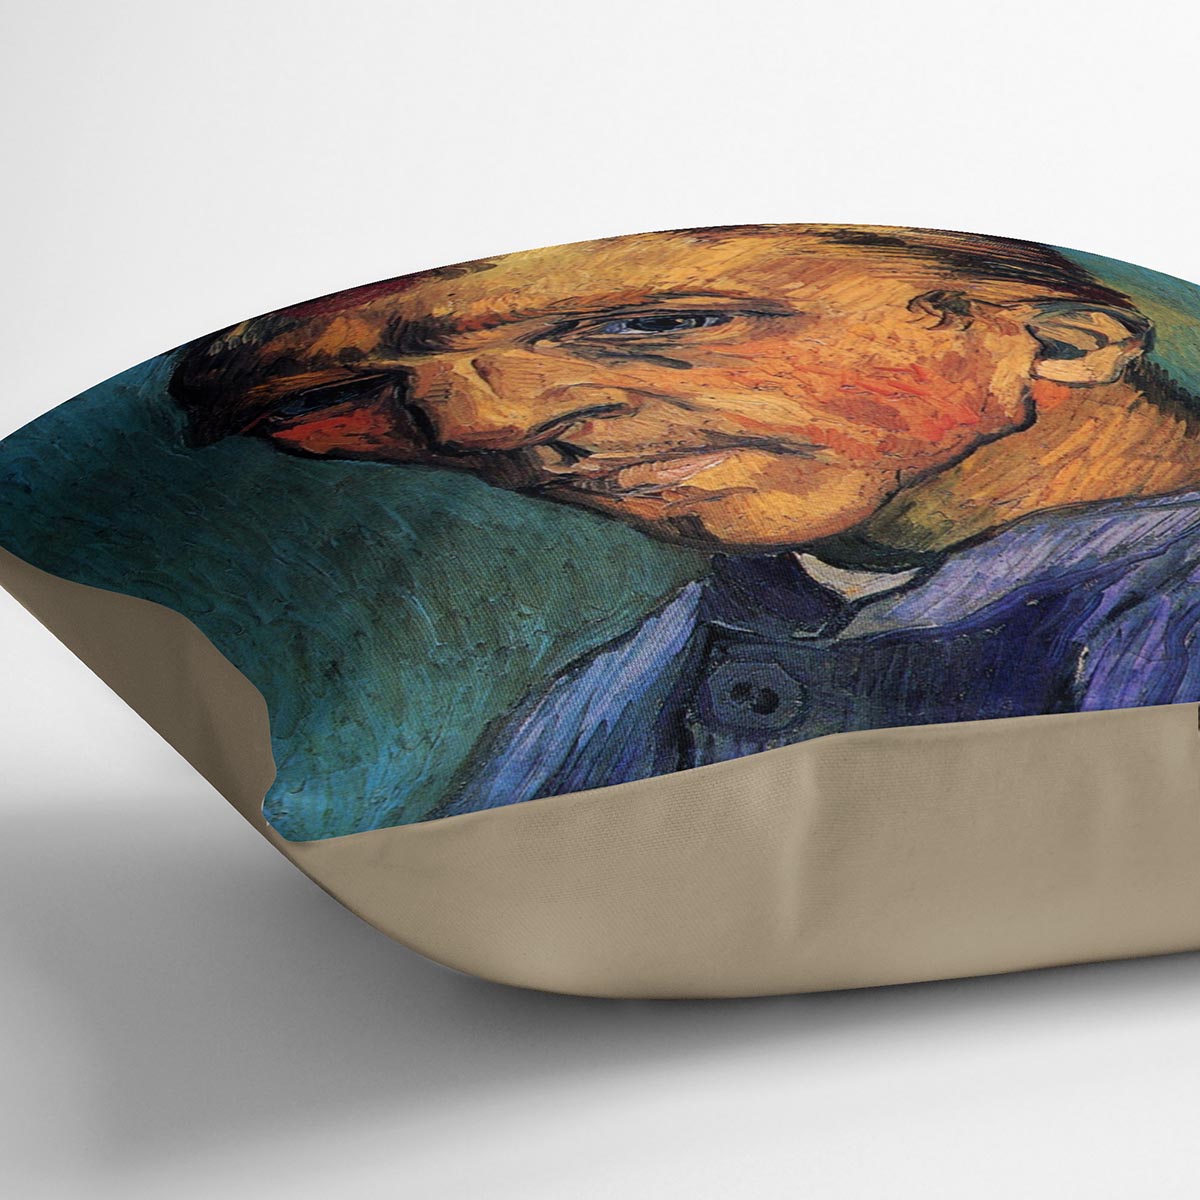 Self-Portrait by Van Gogh Cushion